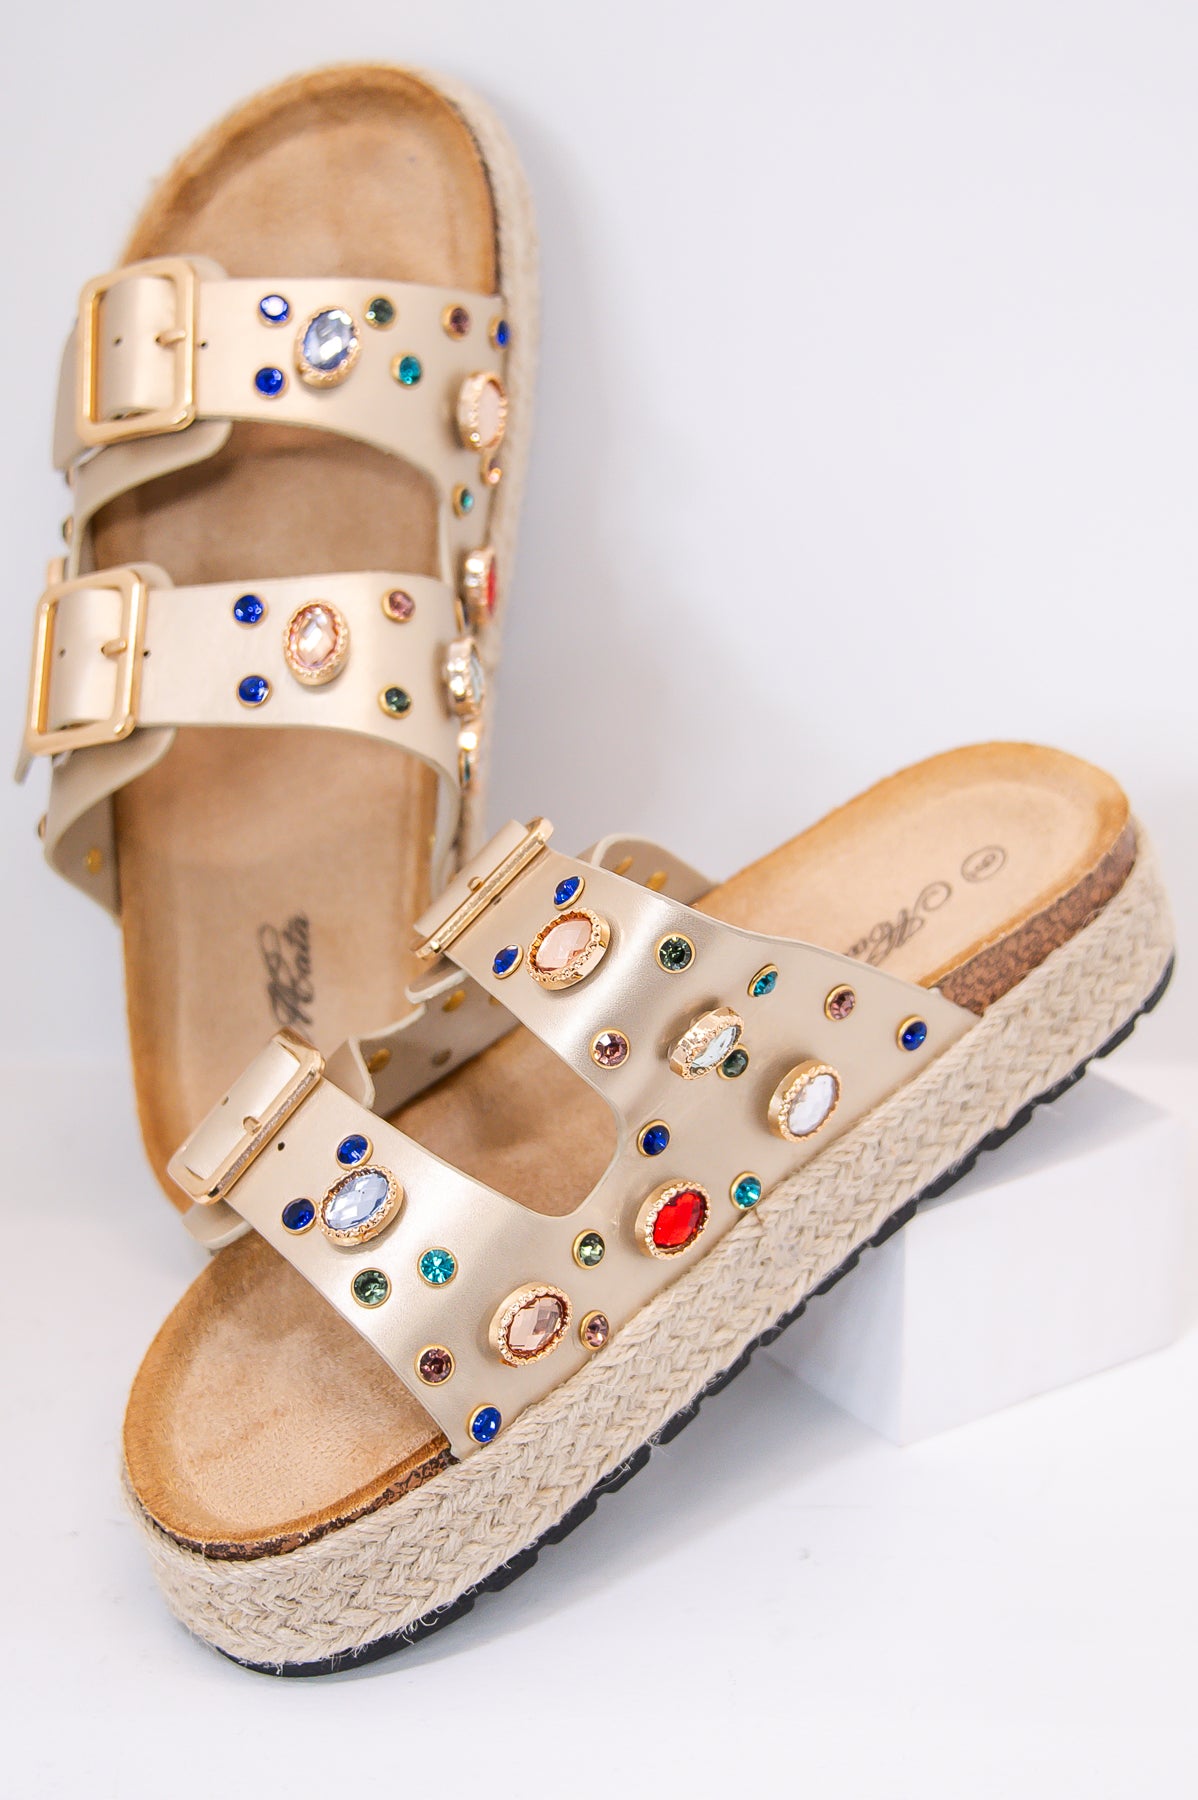 Dazzling Summer Style Gold/Multi Color Bling Platform Sandals - SHO2685GD